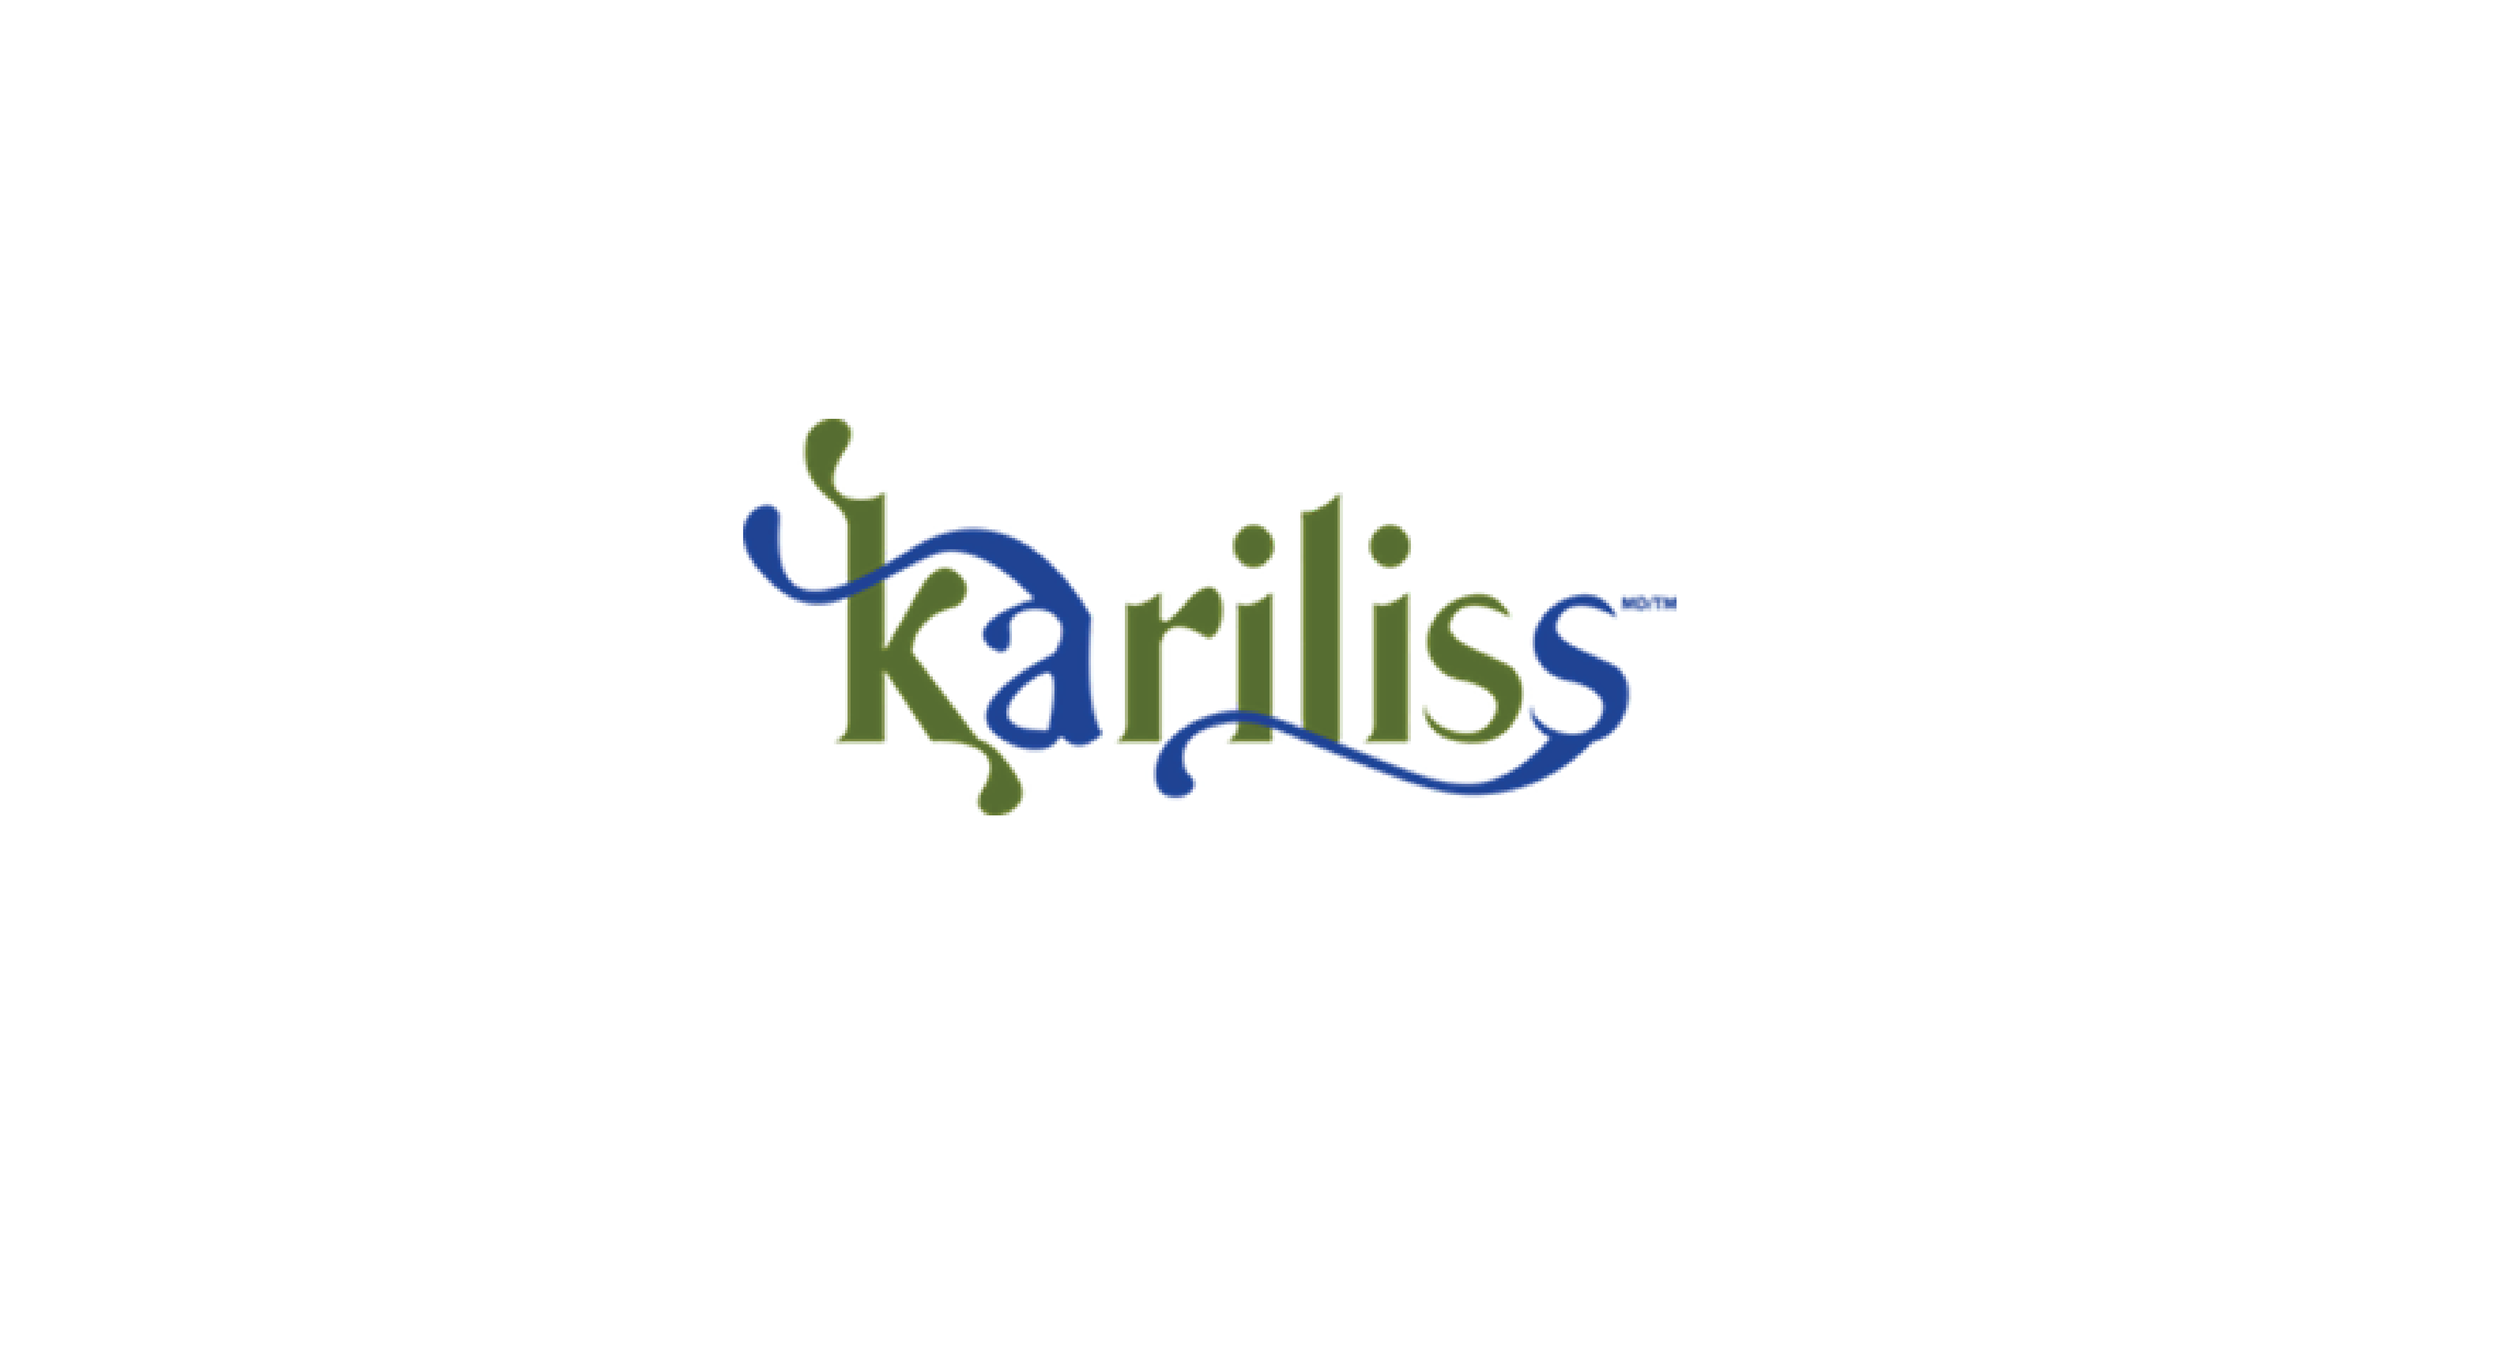 karliss logo.png